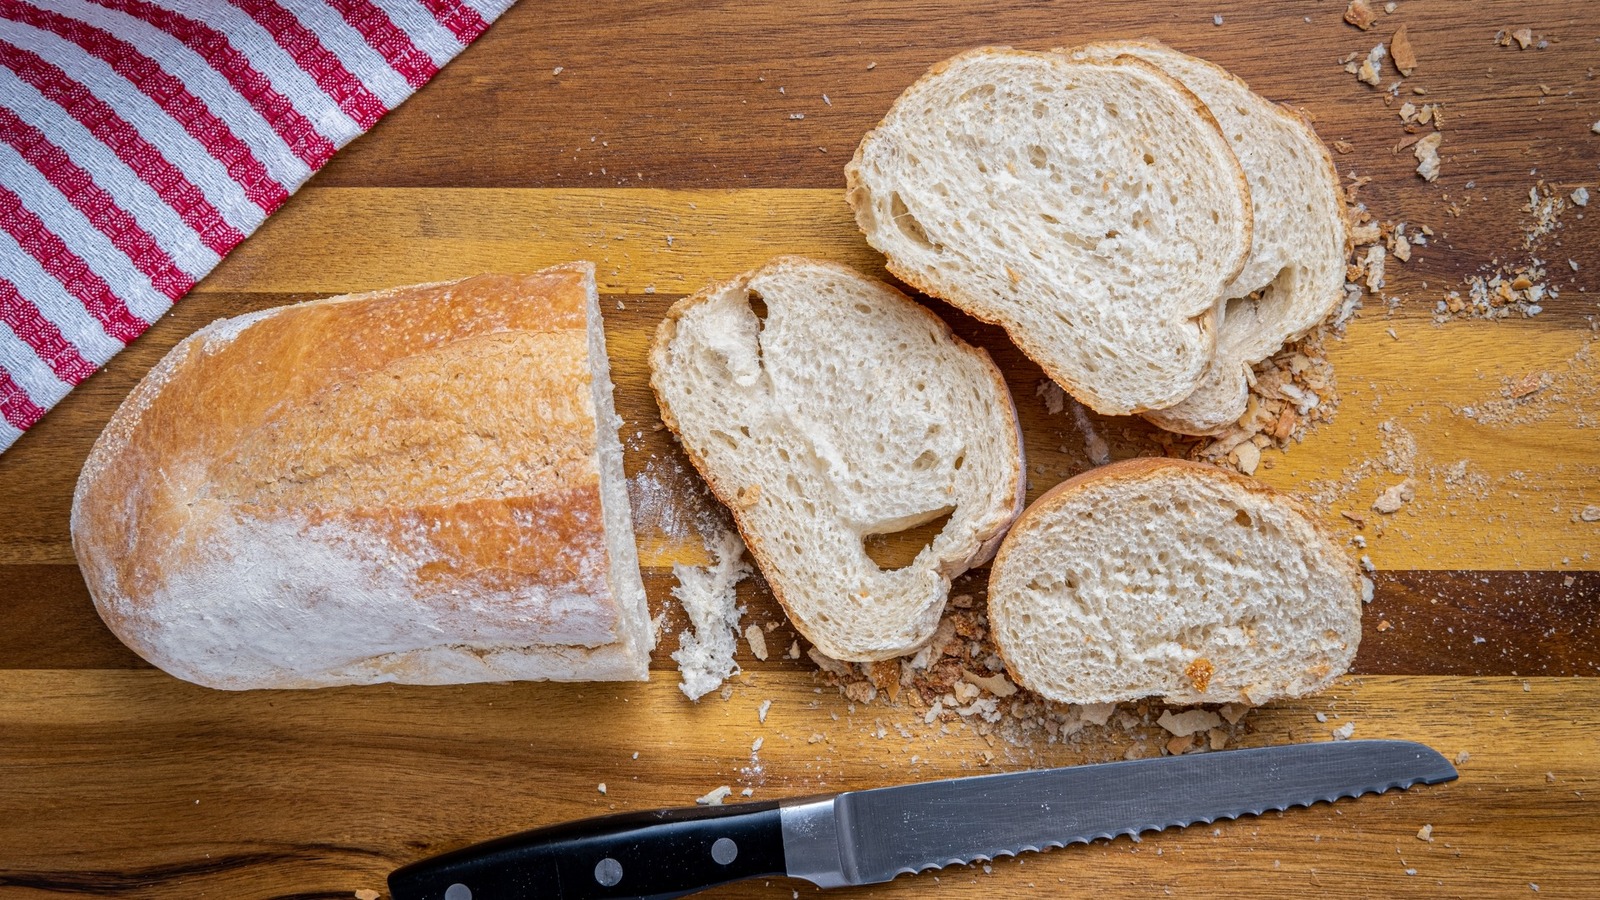 Slicing Bread